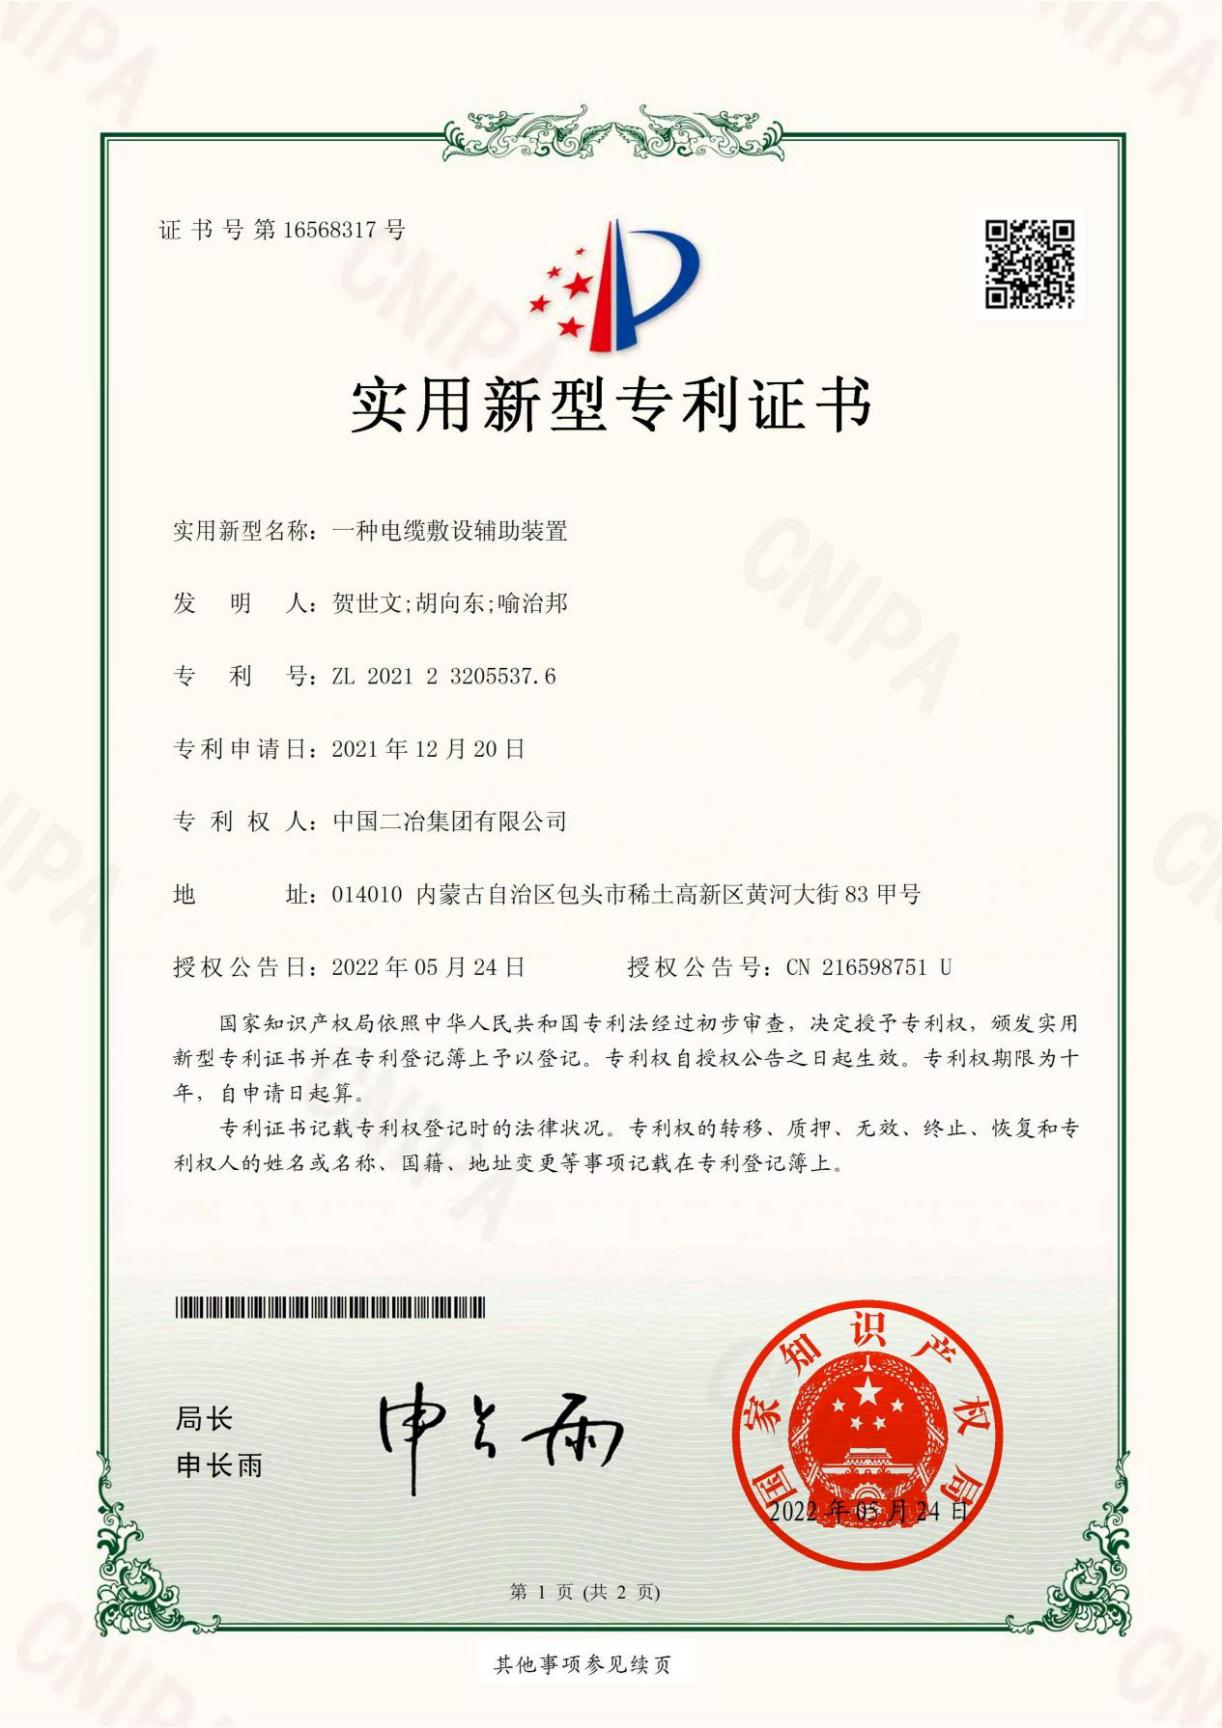 甘肃分公司-2021232055376-213681U-BJ-实用新型专利证书(签章)_00